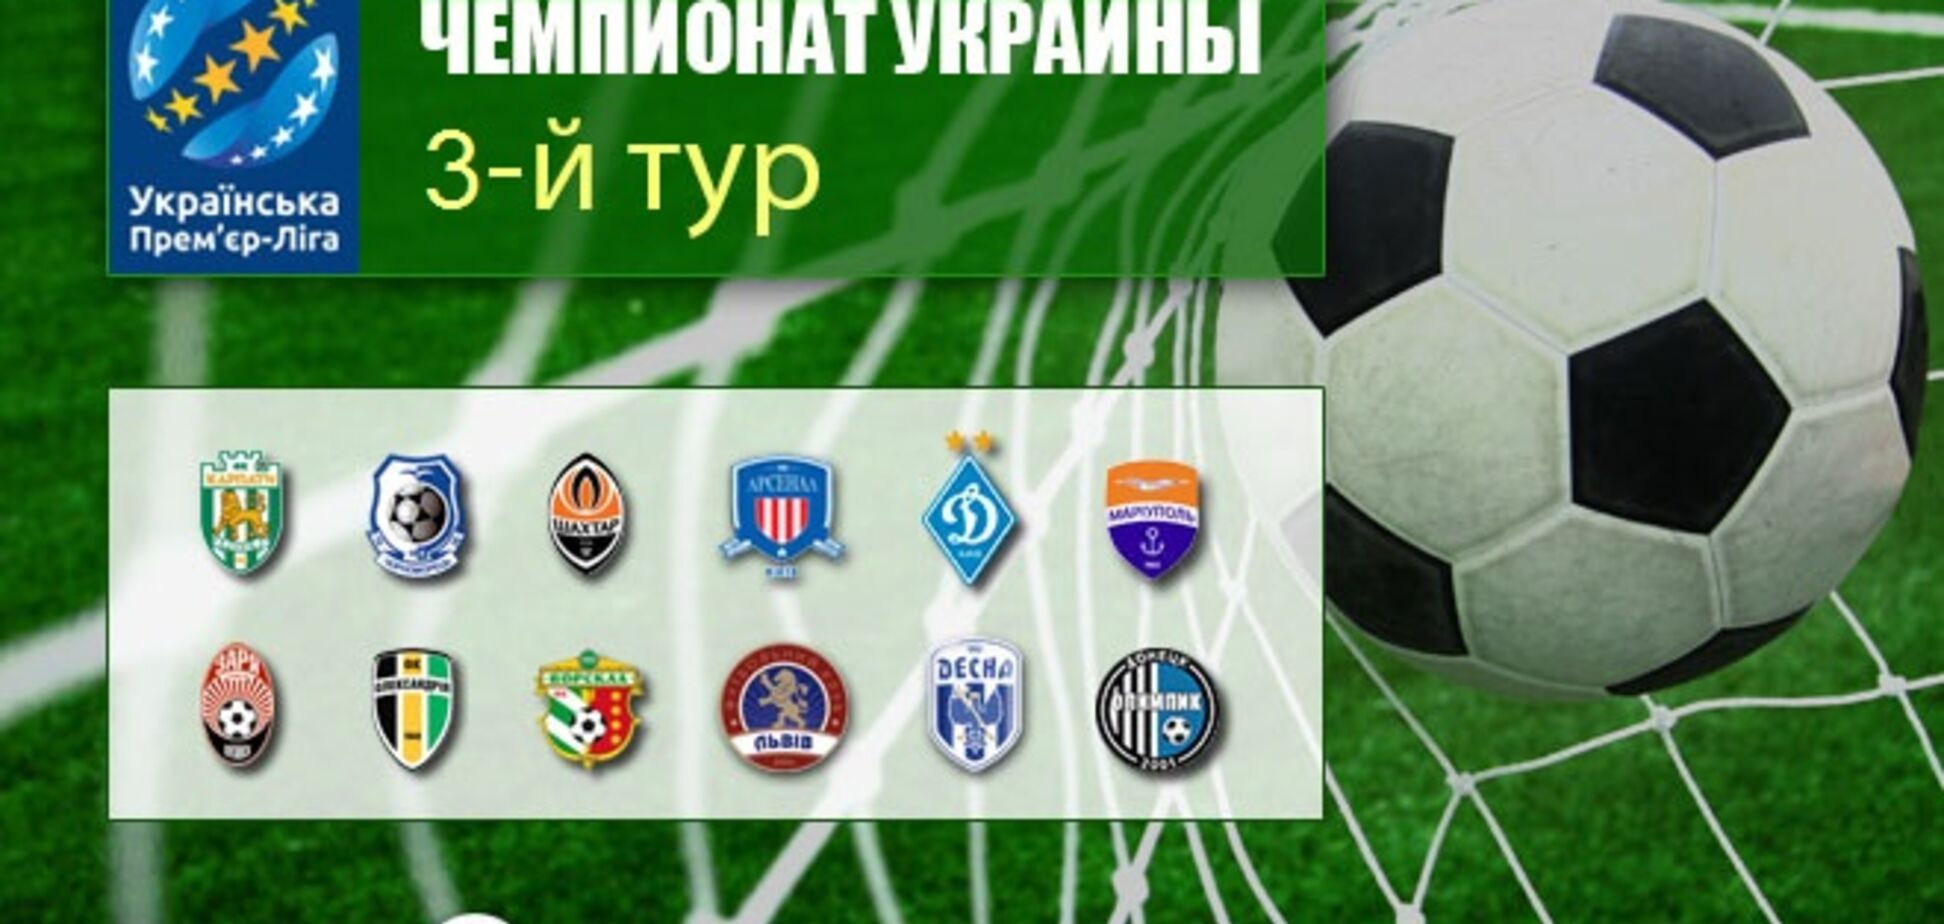 3-й тур чемпіонату України з футболу: всі результати, відеоогляди, таблиця